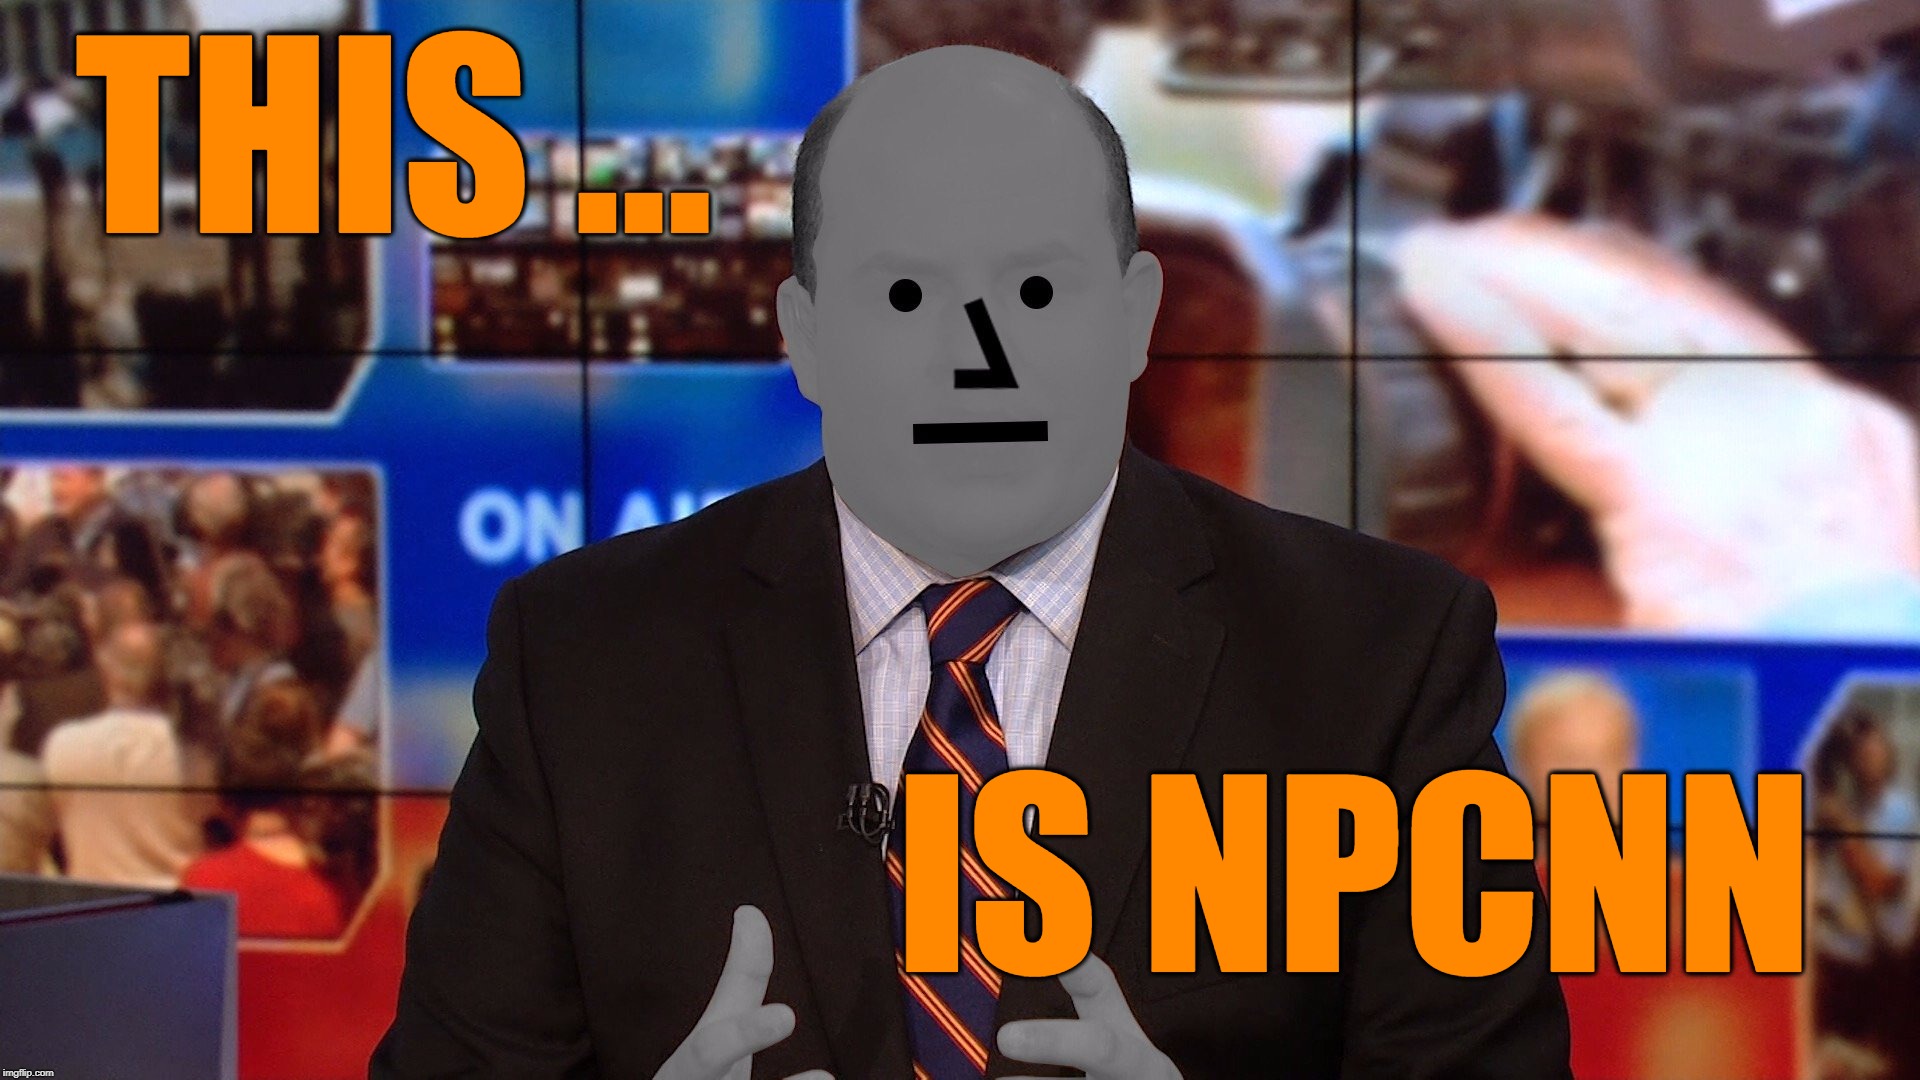 NPCNN  | THIS ... IS NPCNN | image tagged in memes,political meme,cnn,cnn fake news,npc | made w/ Imgflip meme maker